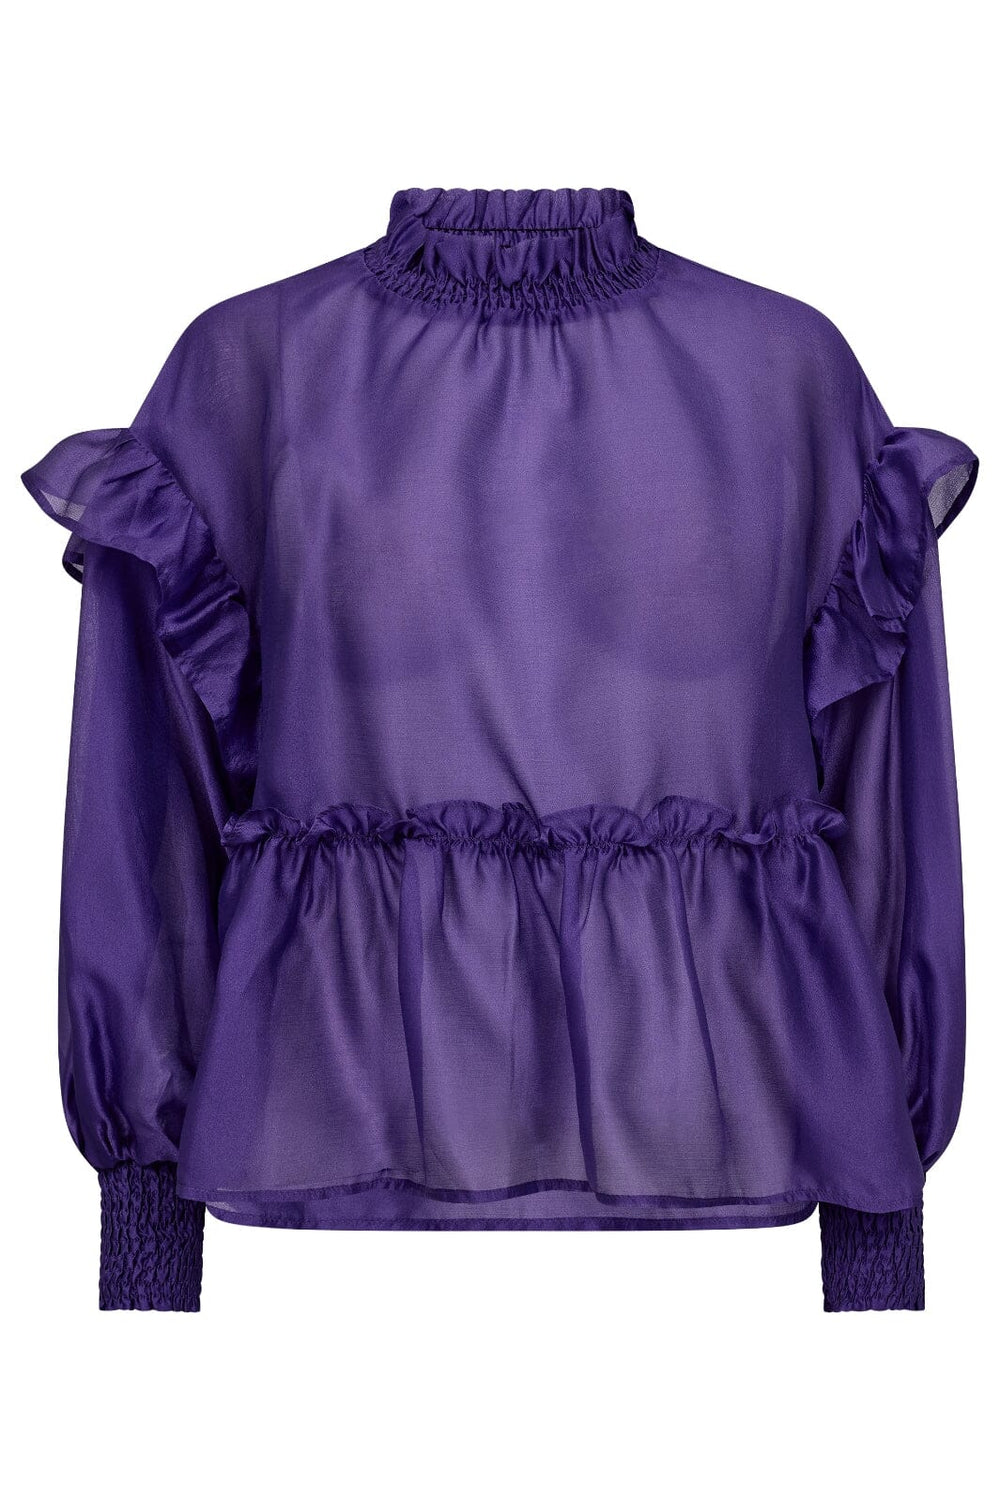 Co´couture - Moniquecc Frill Blouse - 350 Purple Bluser 